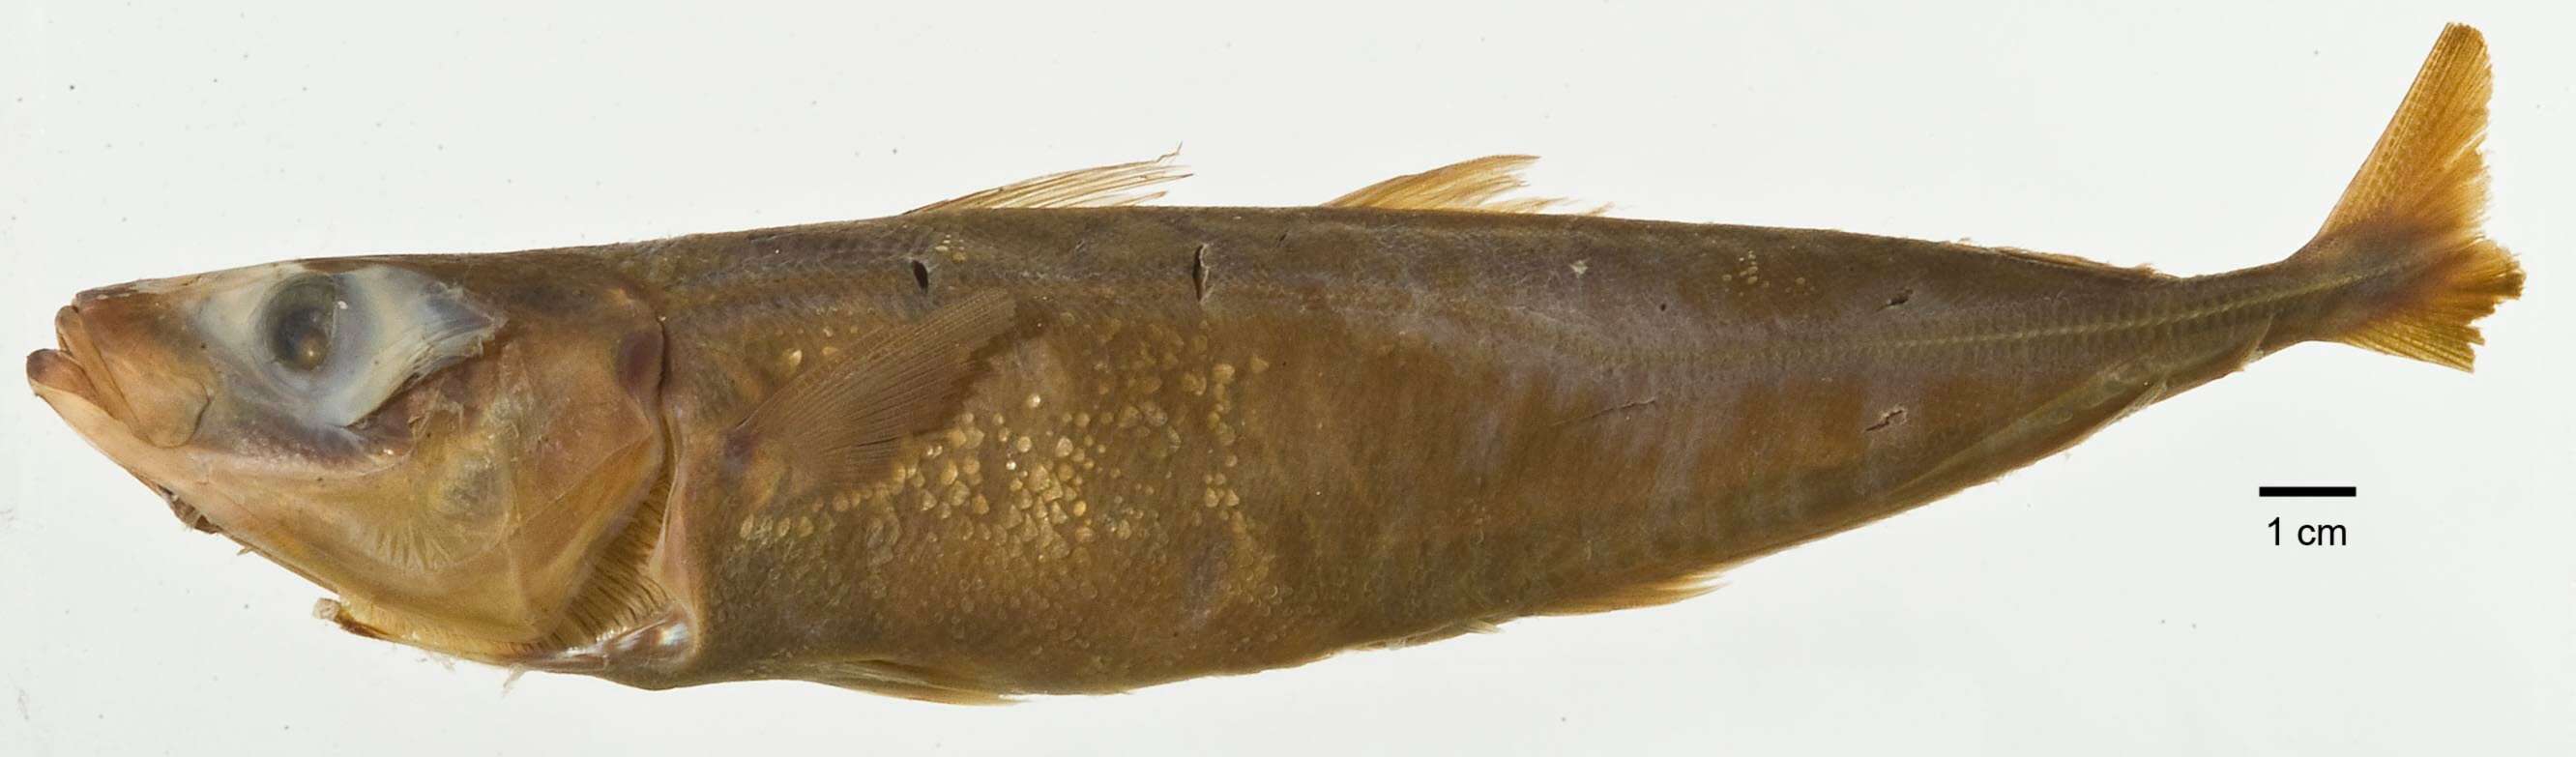 Image of Cherootfish